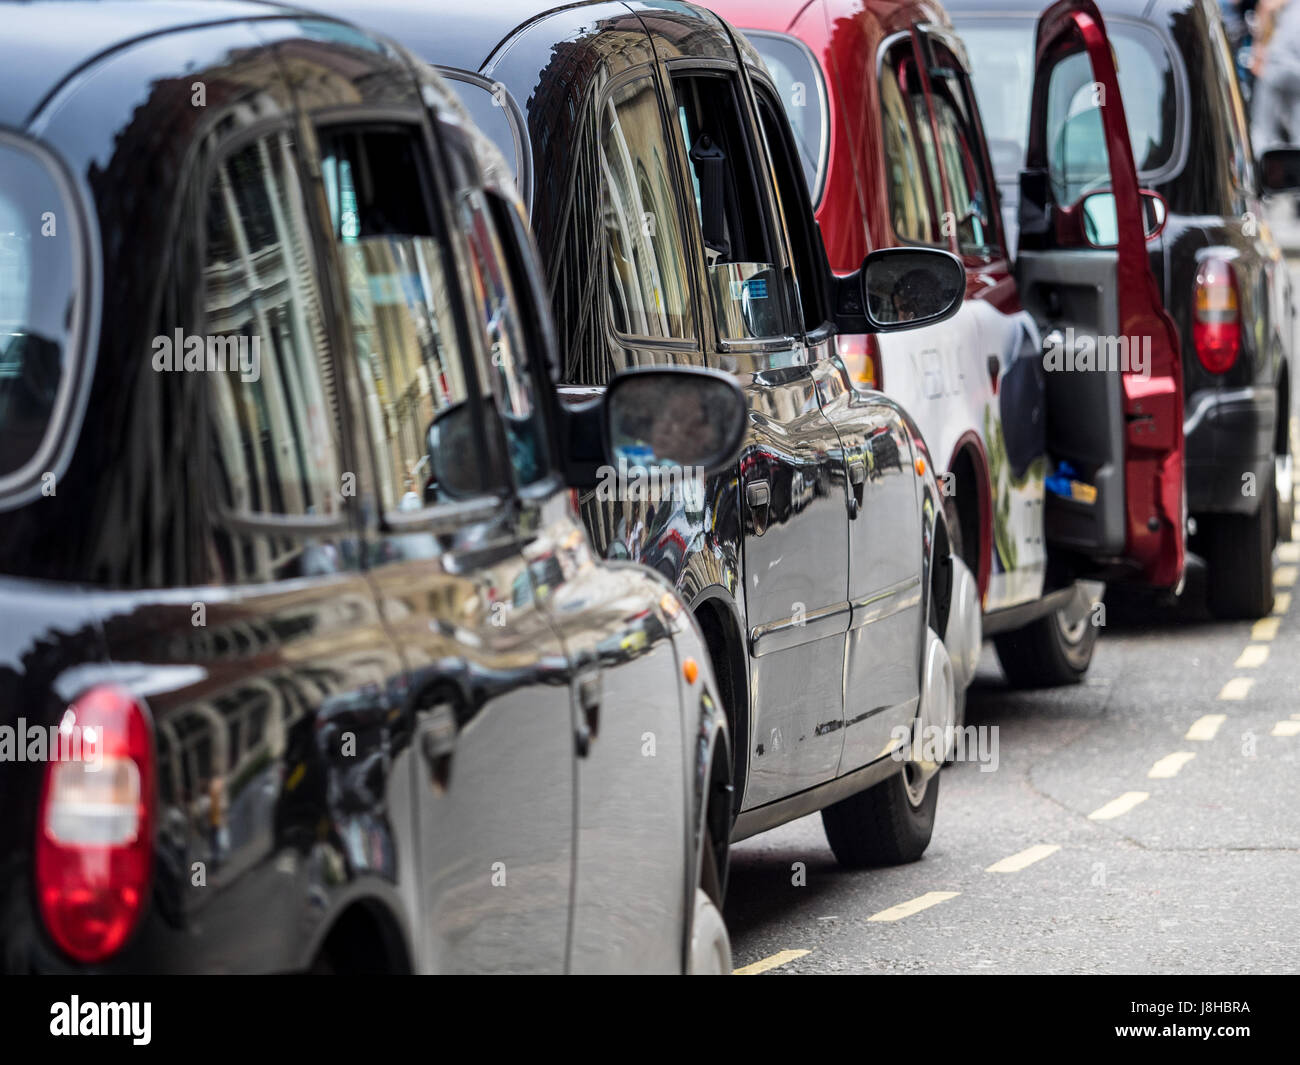 Londra Taxi taxi neri in coda per i passeggeri a Londra Centrale Stazione ferroviaria Foto Stock